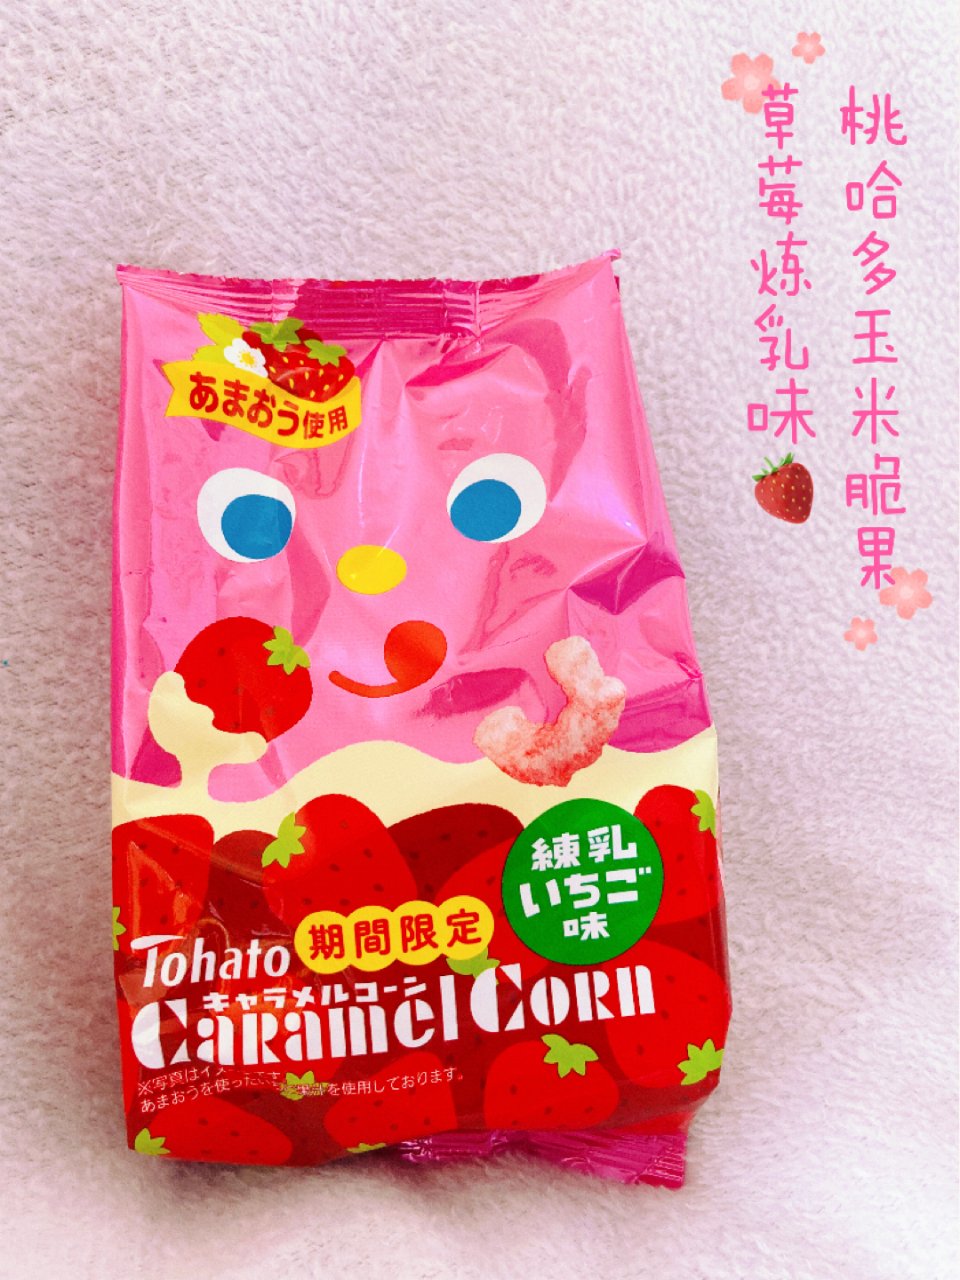 桃哈多焦糖栗米条 ❤️ 草莓炼乳味 🍓...